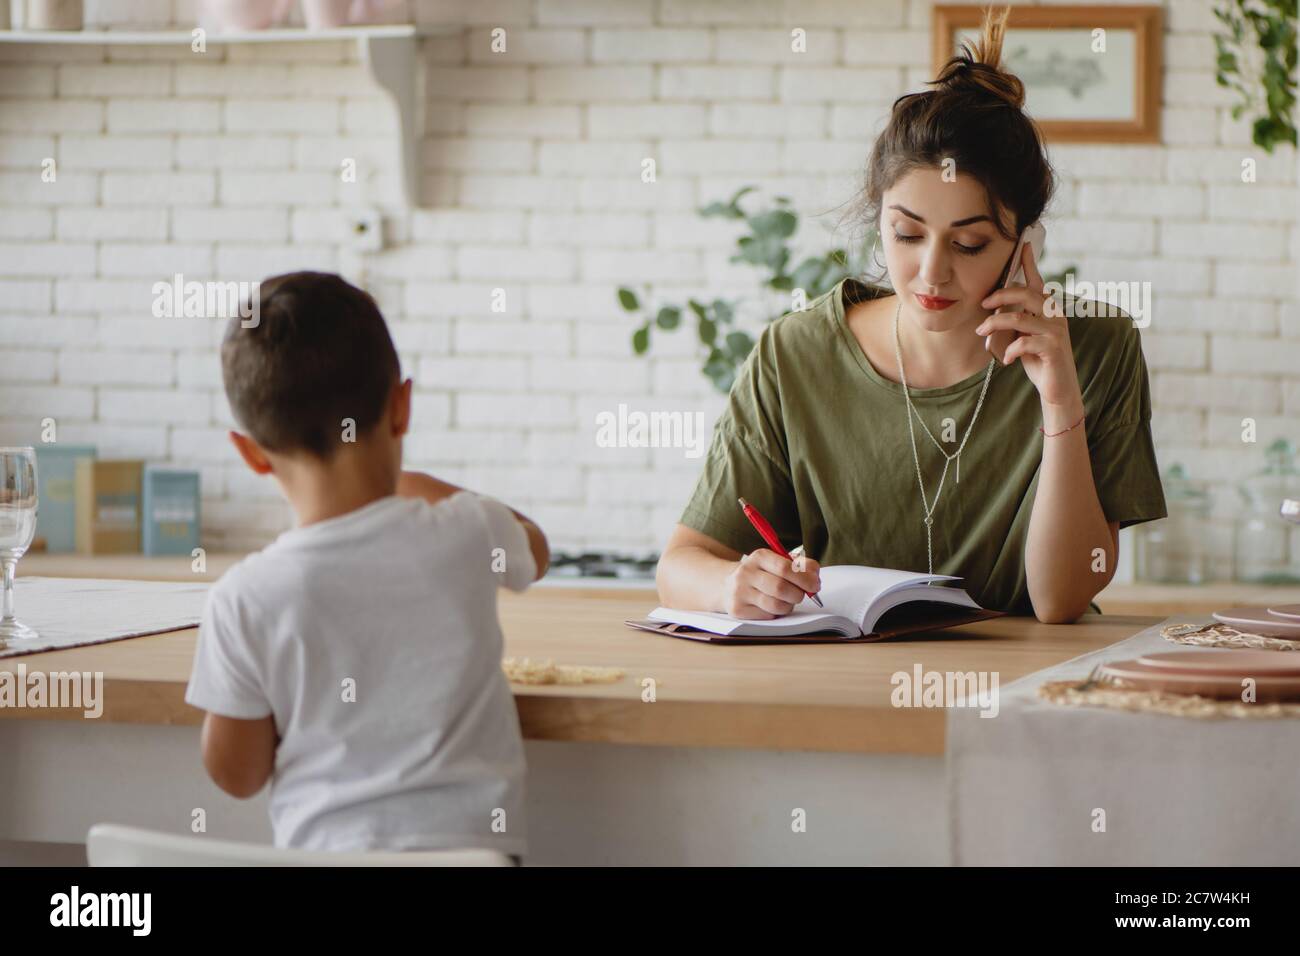 Jeune femme prenant des notes et parlant au téléphone pendant que son enfant joue à proximité. Concept de mère de travail. Banque D'Images